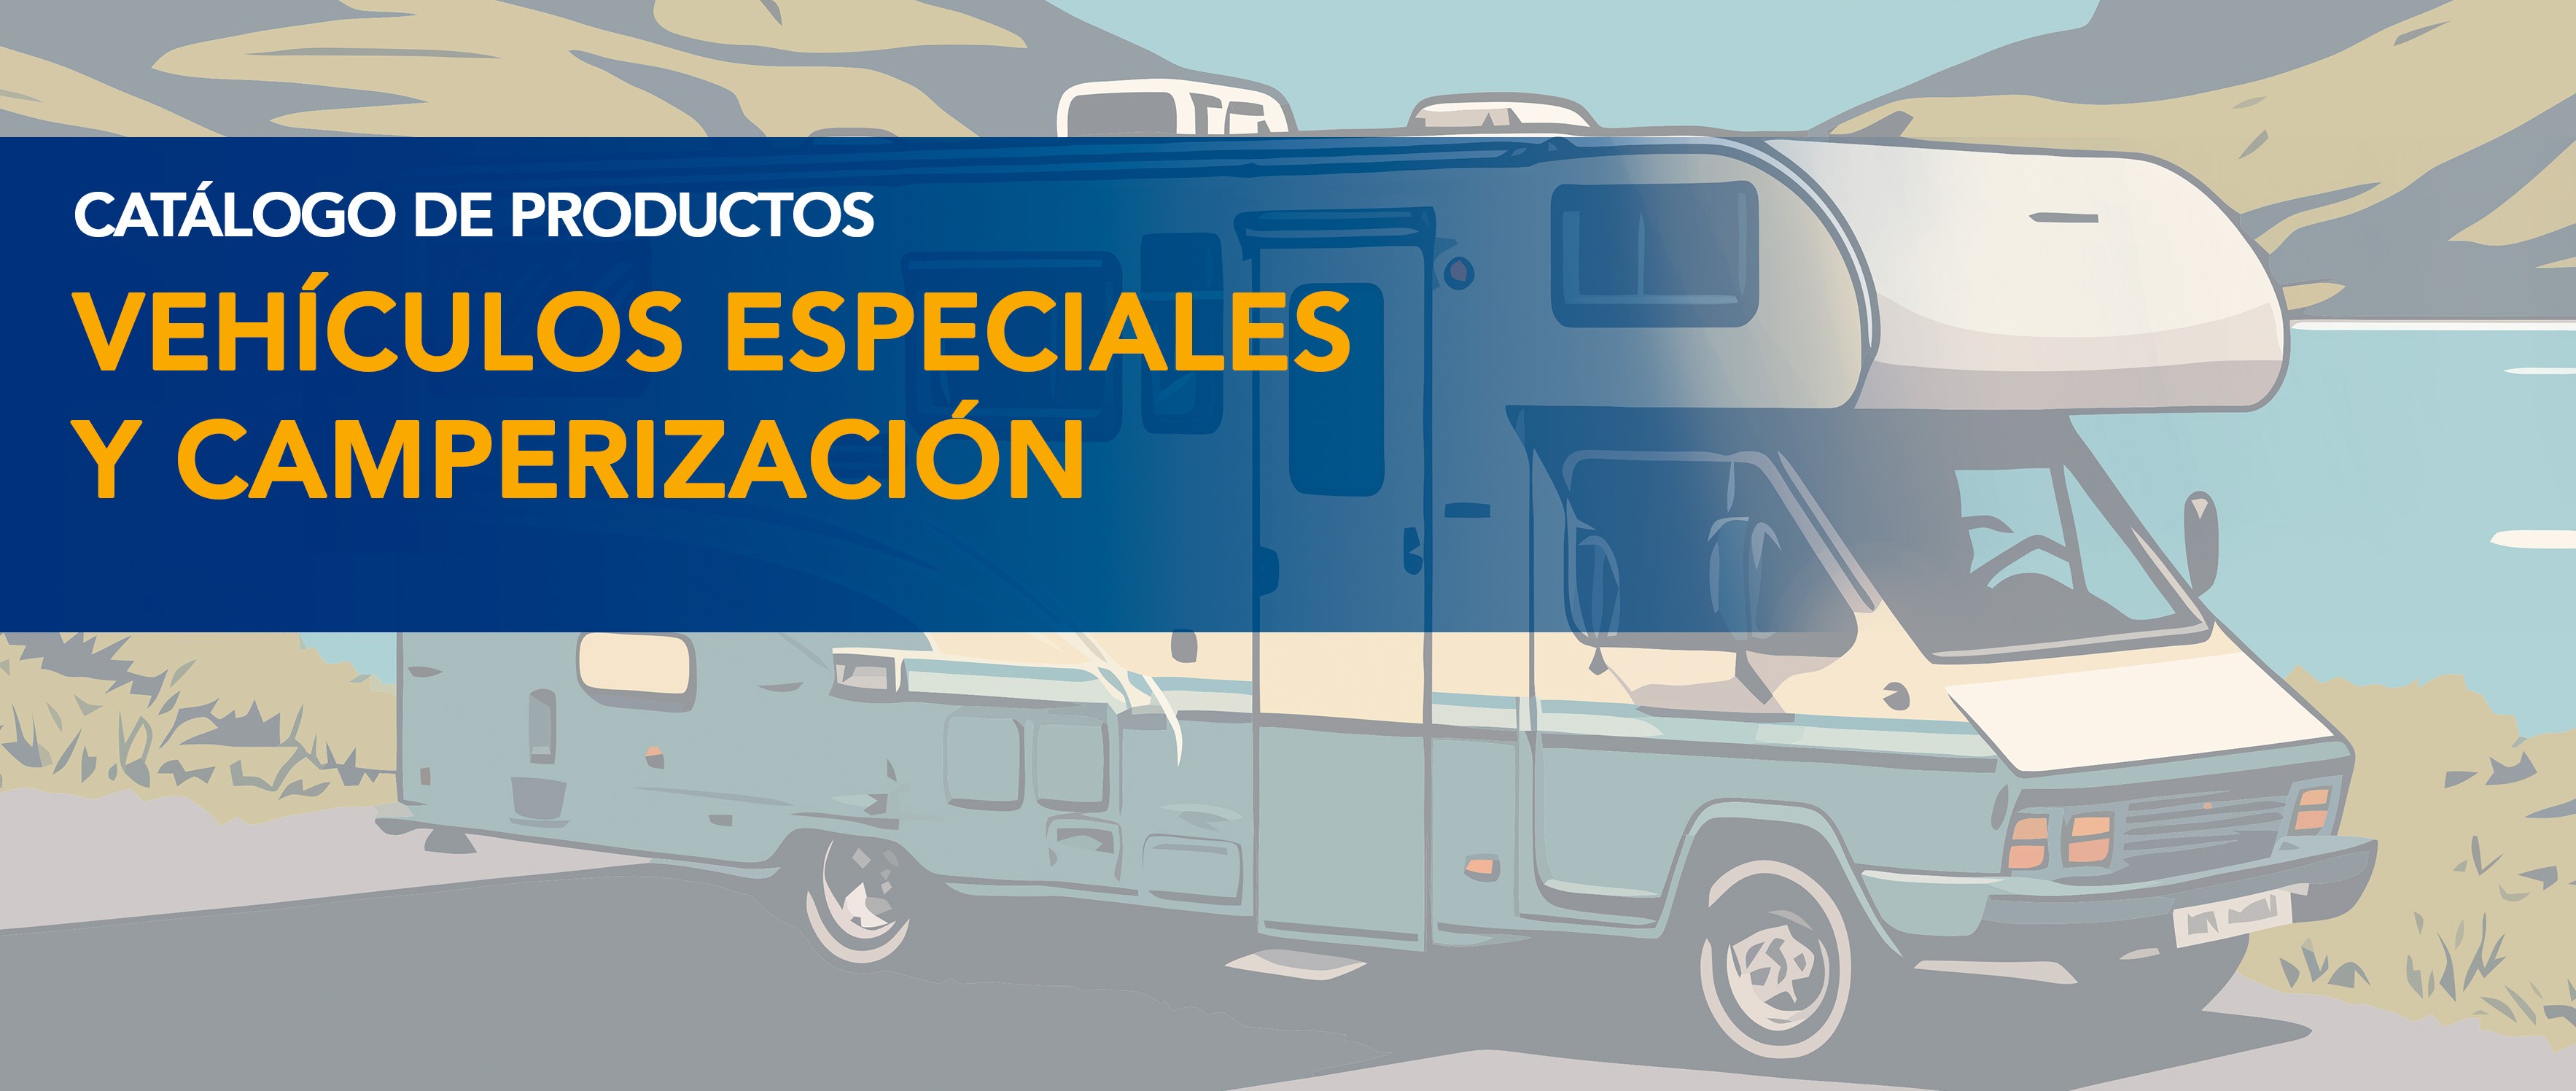 ¡Nuevo catálogo de vehículos especiales y camperización!